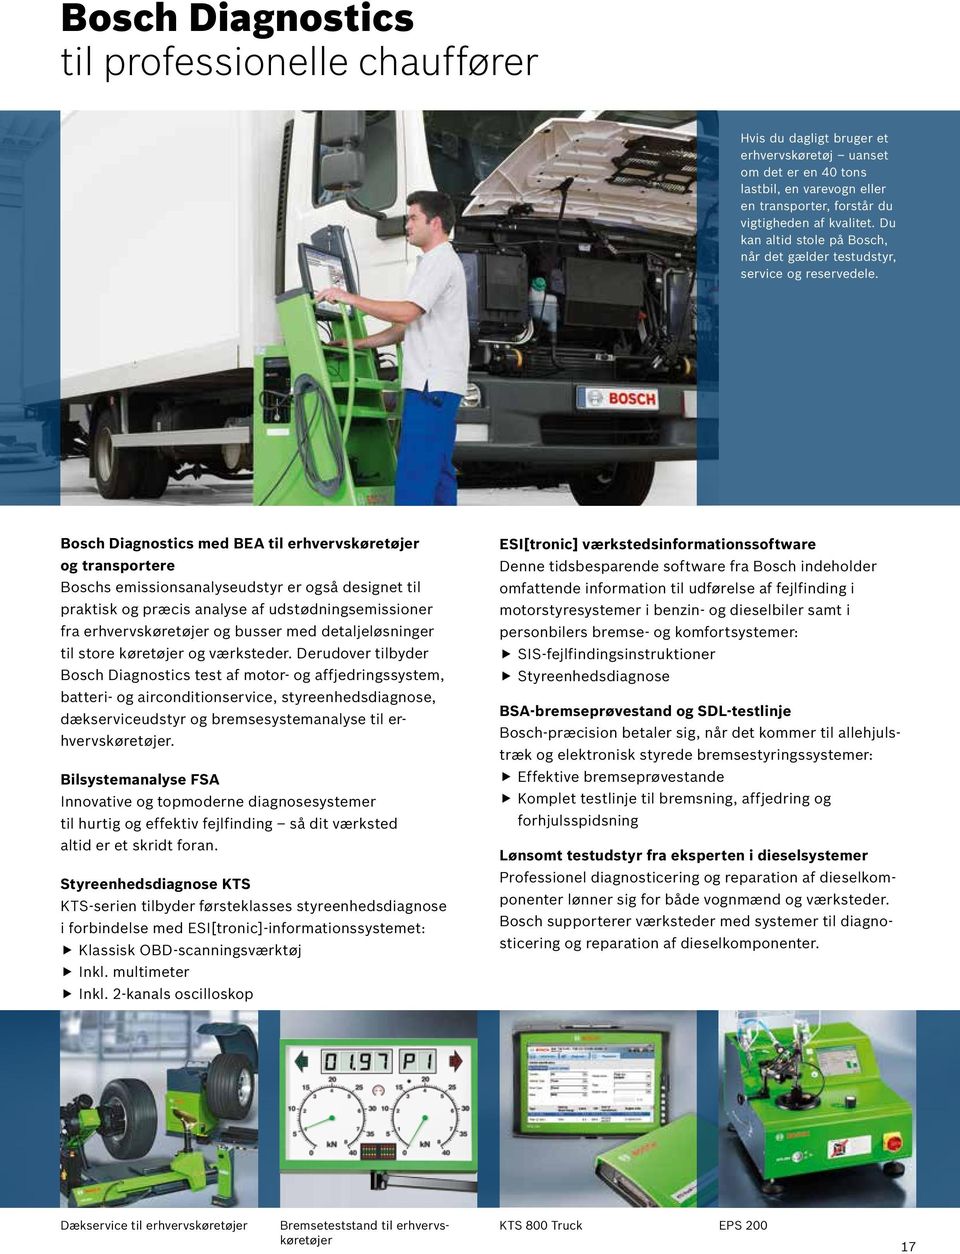 Bosch Diagnostics med BEA til erhvervskøretøjer og transportere Boschs emissionsanalyseudstyr er også designet til praktisk og præcis analyse af udstødningsemissioner fra erhvervskøretøjer og busser